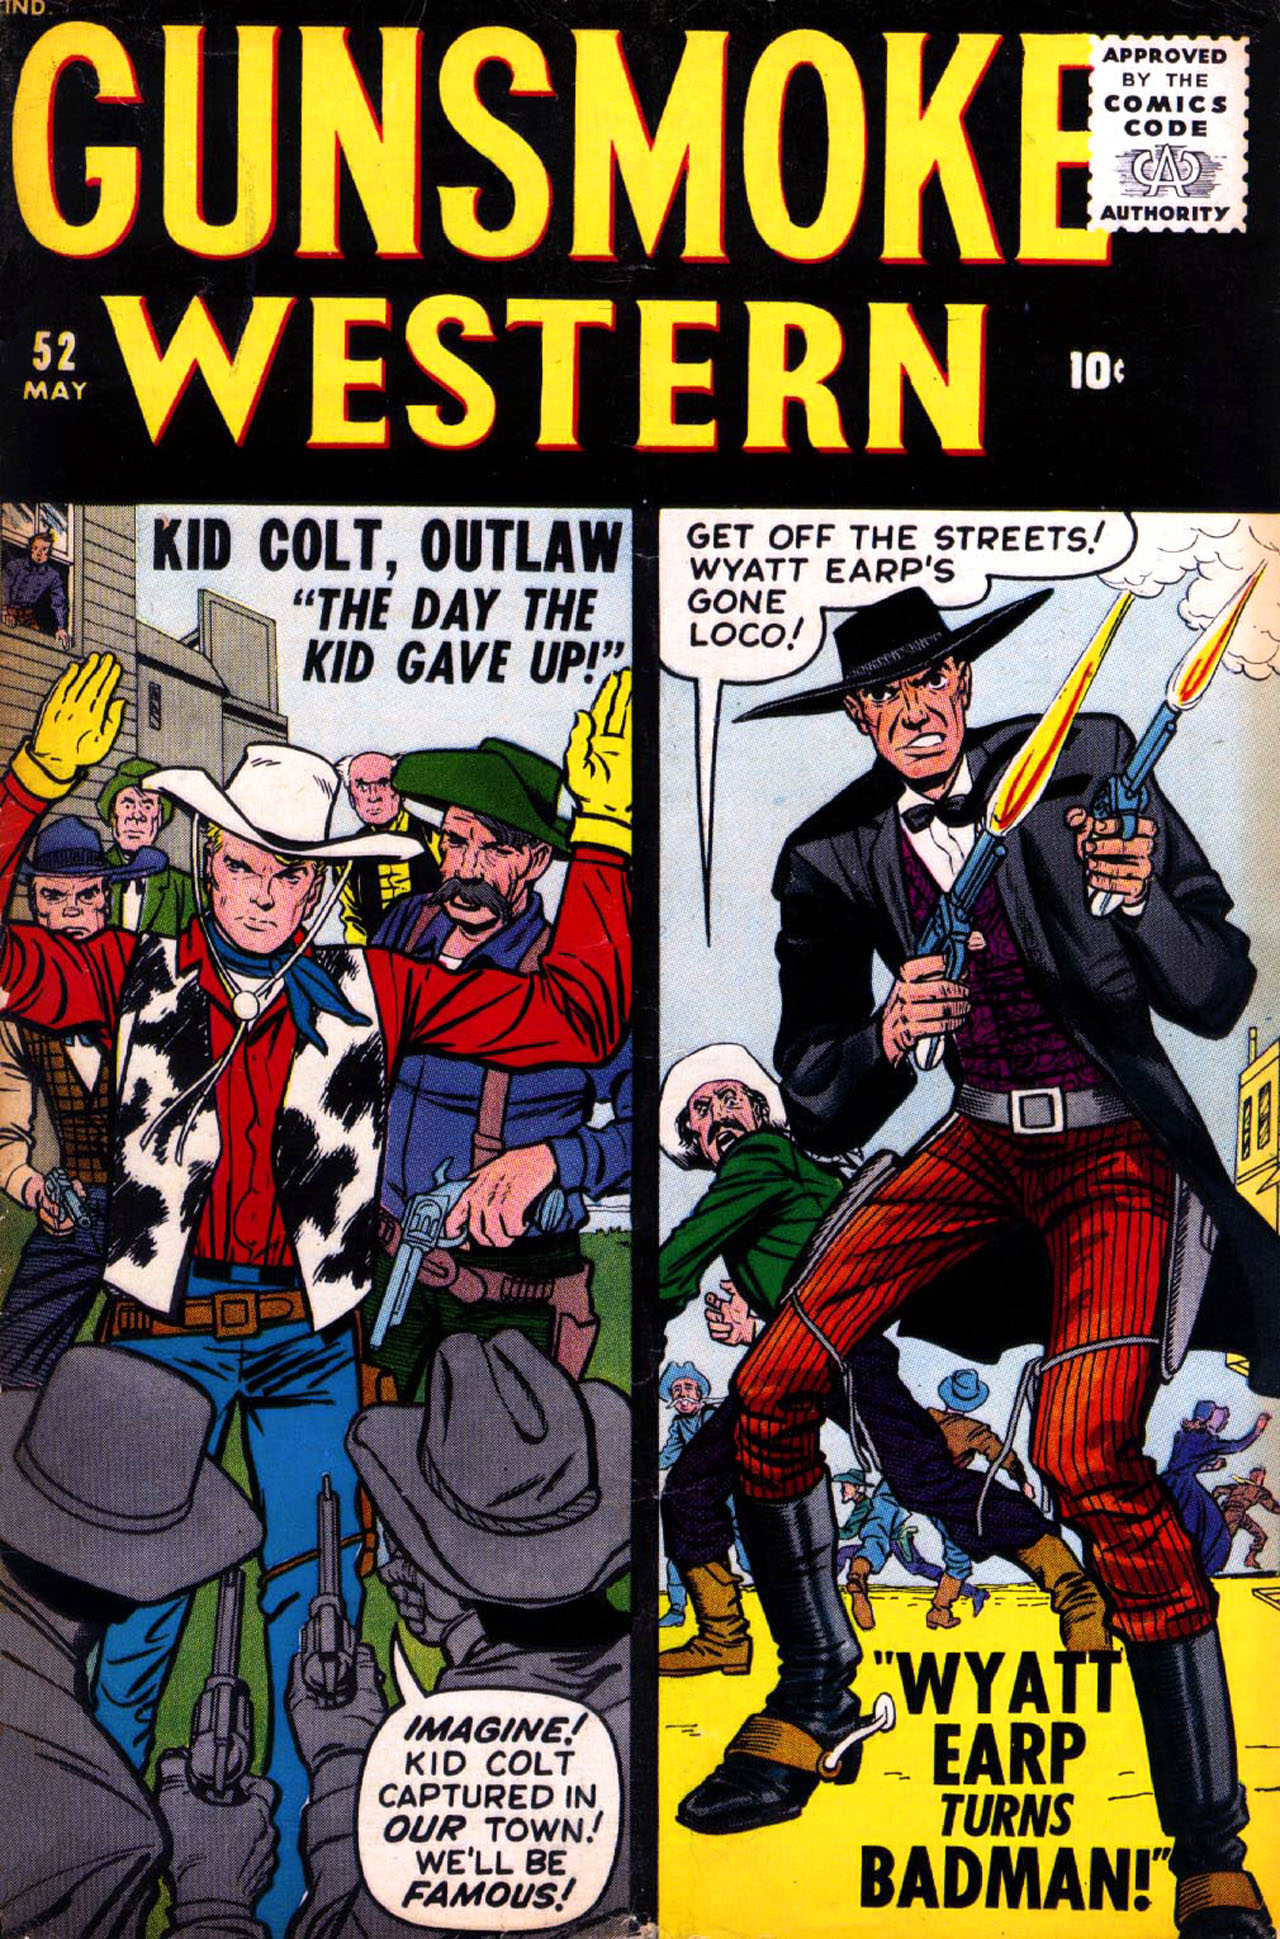 Read online Gunsmoke Western comic -  Issue #52 - 1